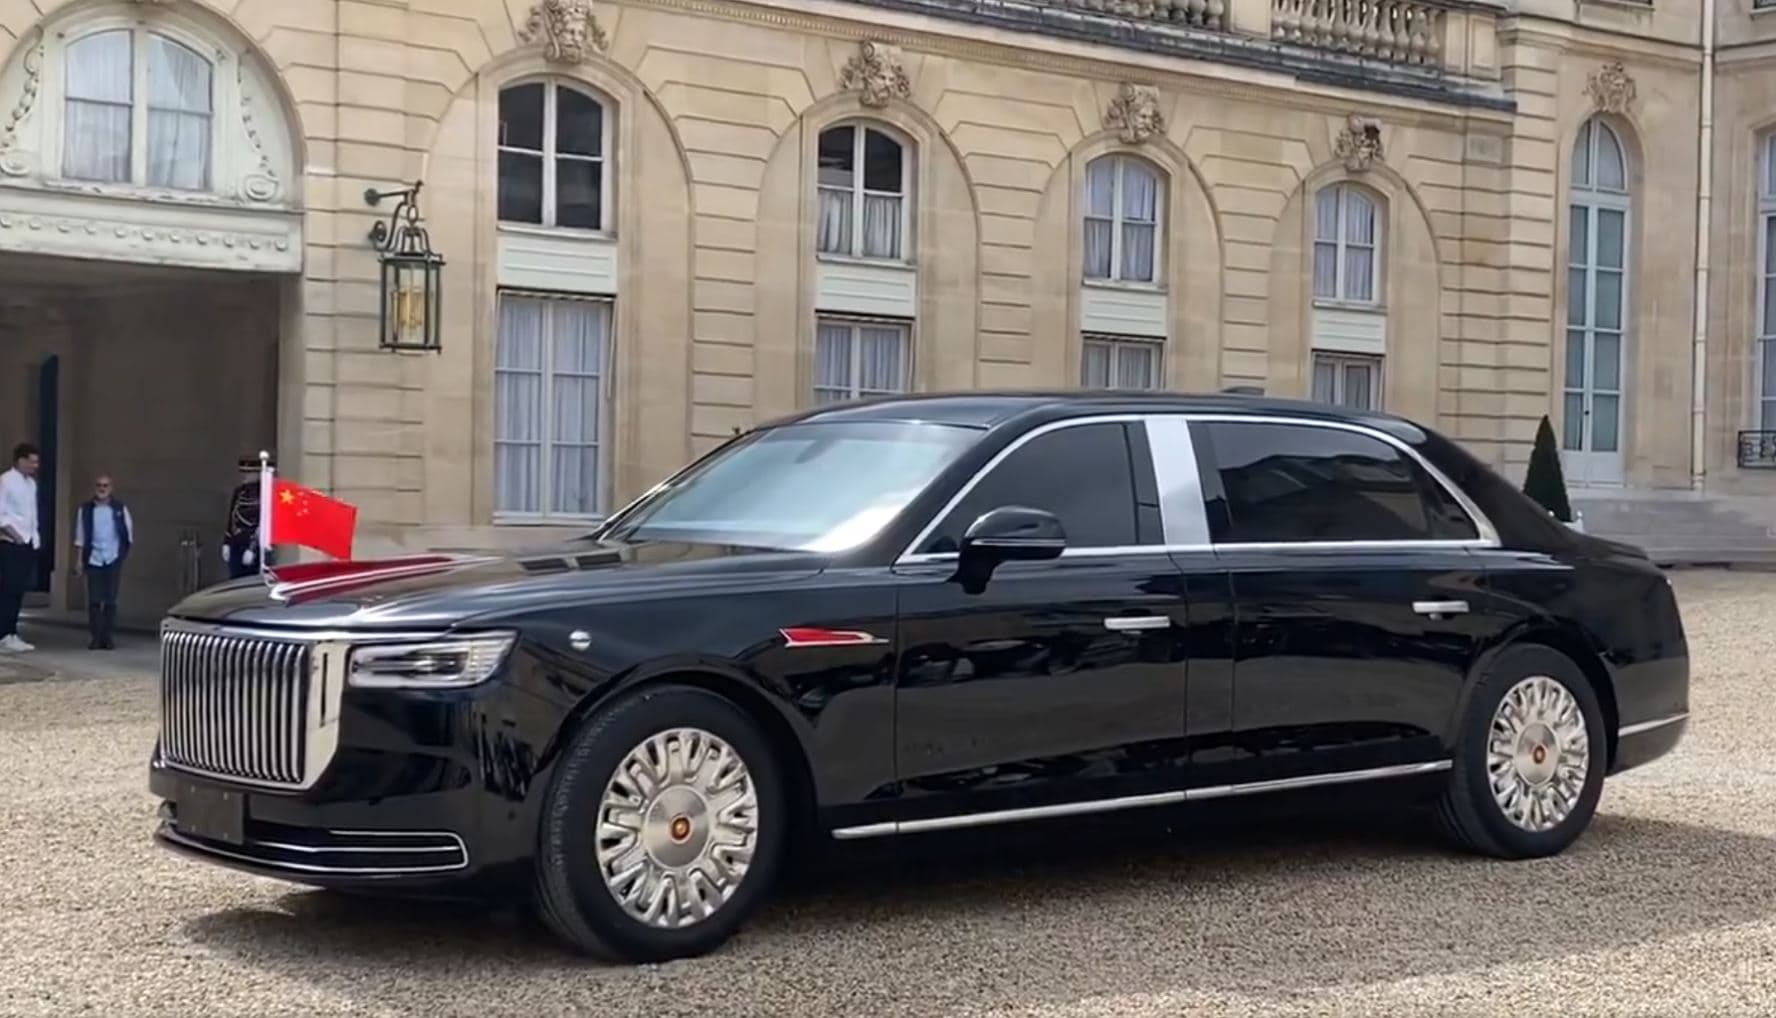 blindage, filtre à air... quelle est la voiture de luxe (relativement abordable) du président chinois xi jinping?